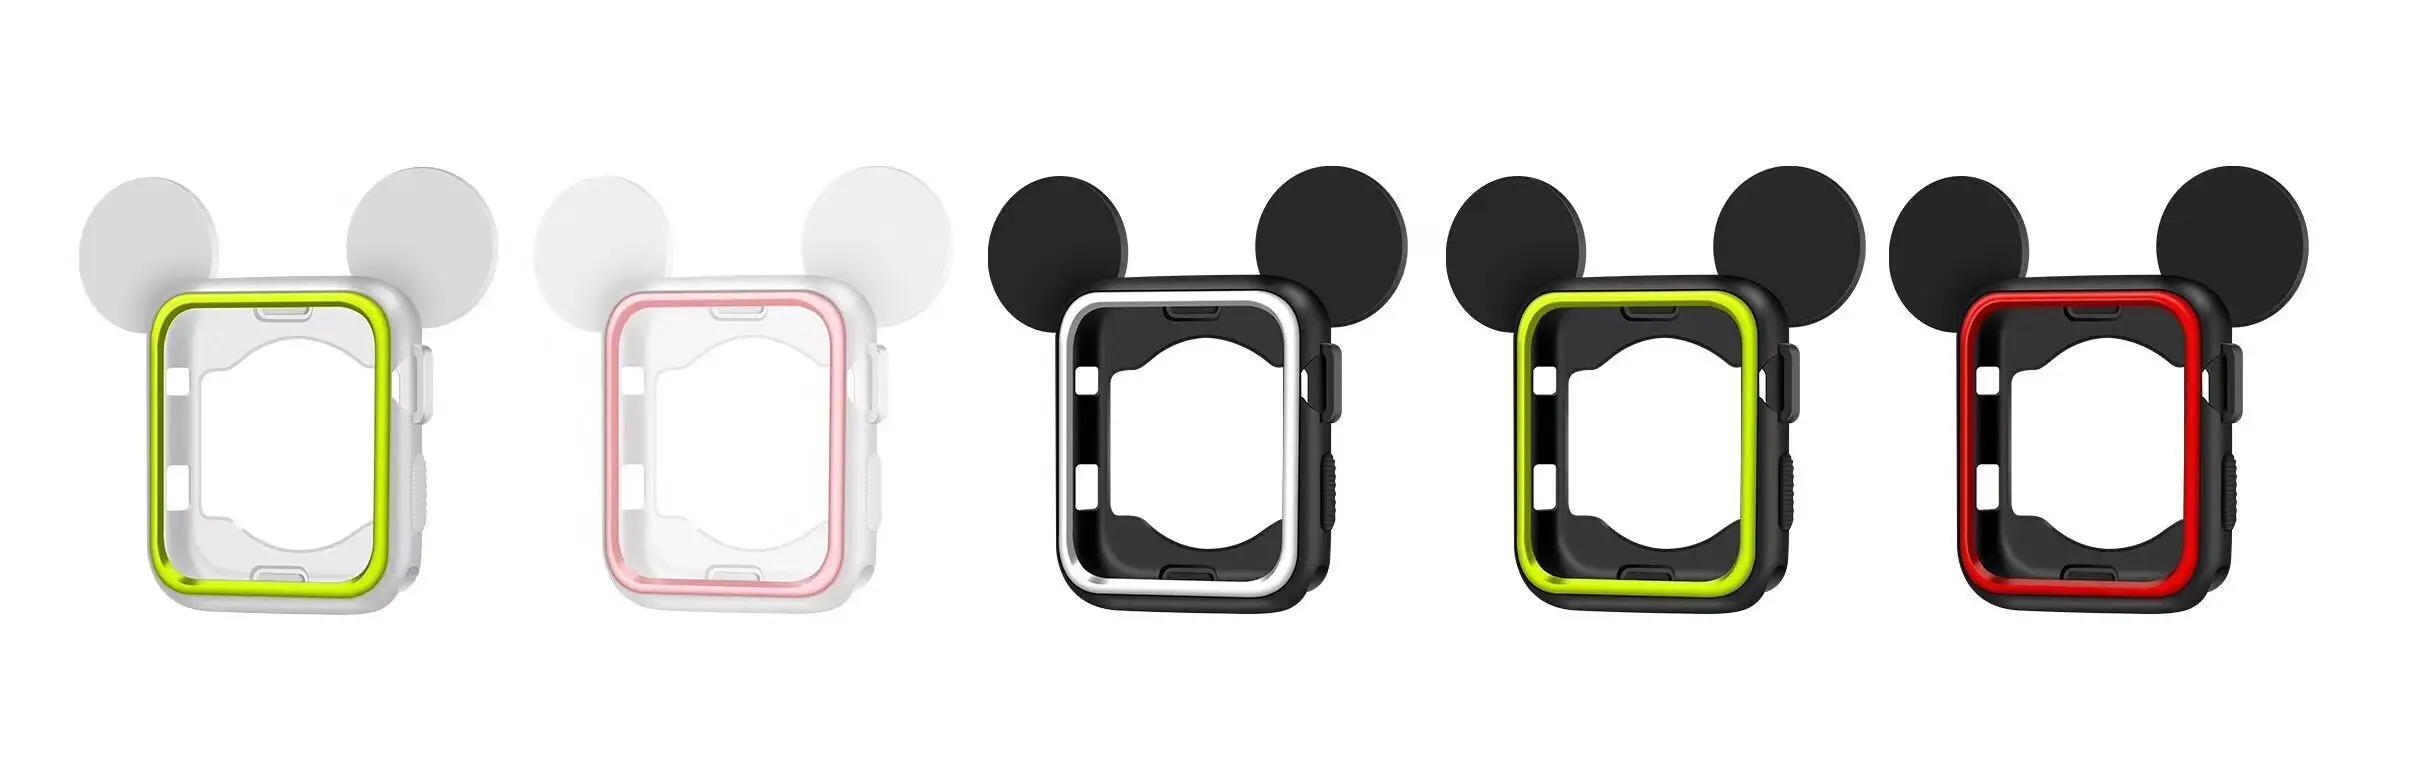 5 видов цветов крышка мягкий резиновый чехол для Apple Watch, версии силиконовая Обложка Микки Nike+ ремешок для наручных часов iwatch серии 3/2/1 38 мм 42 мм